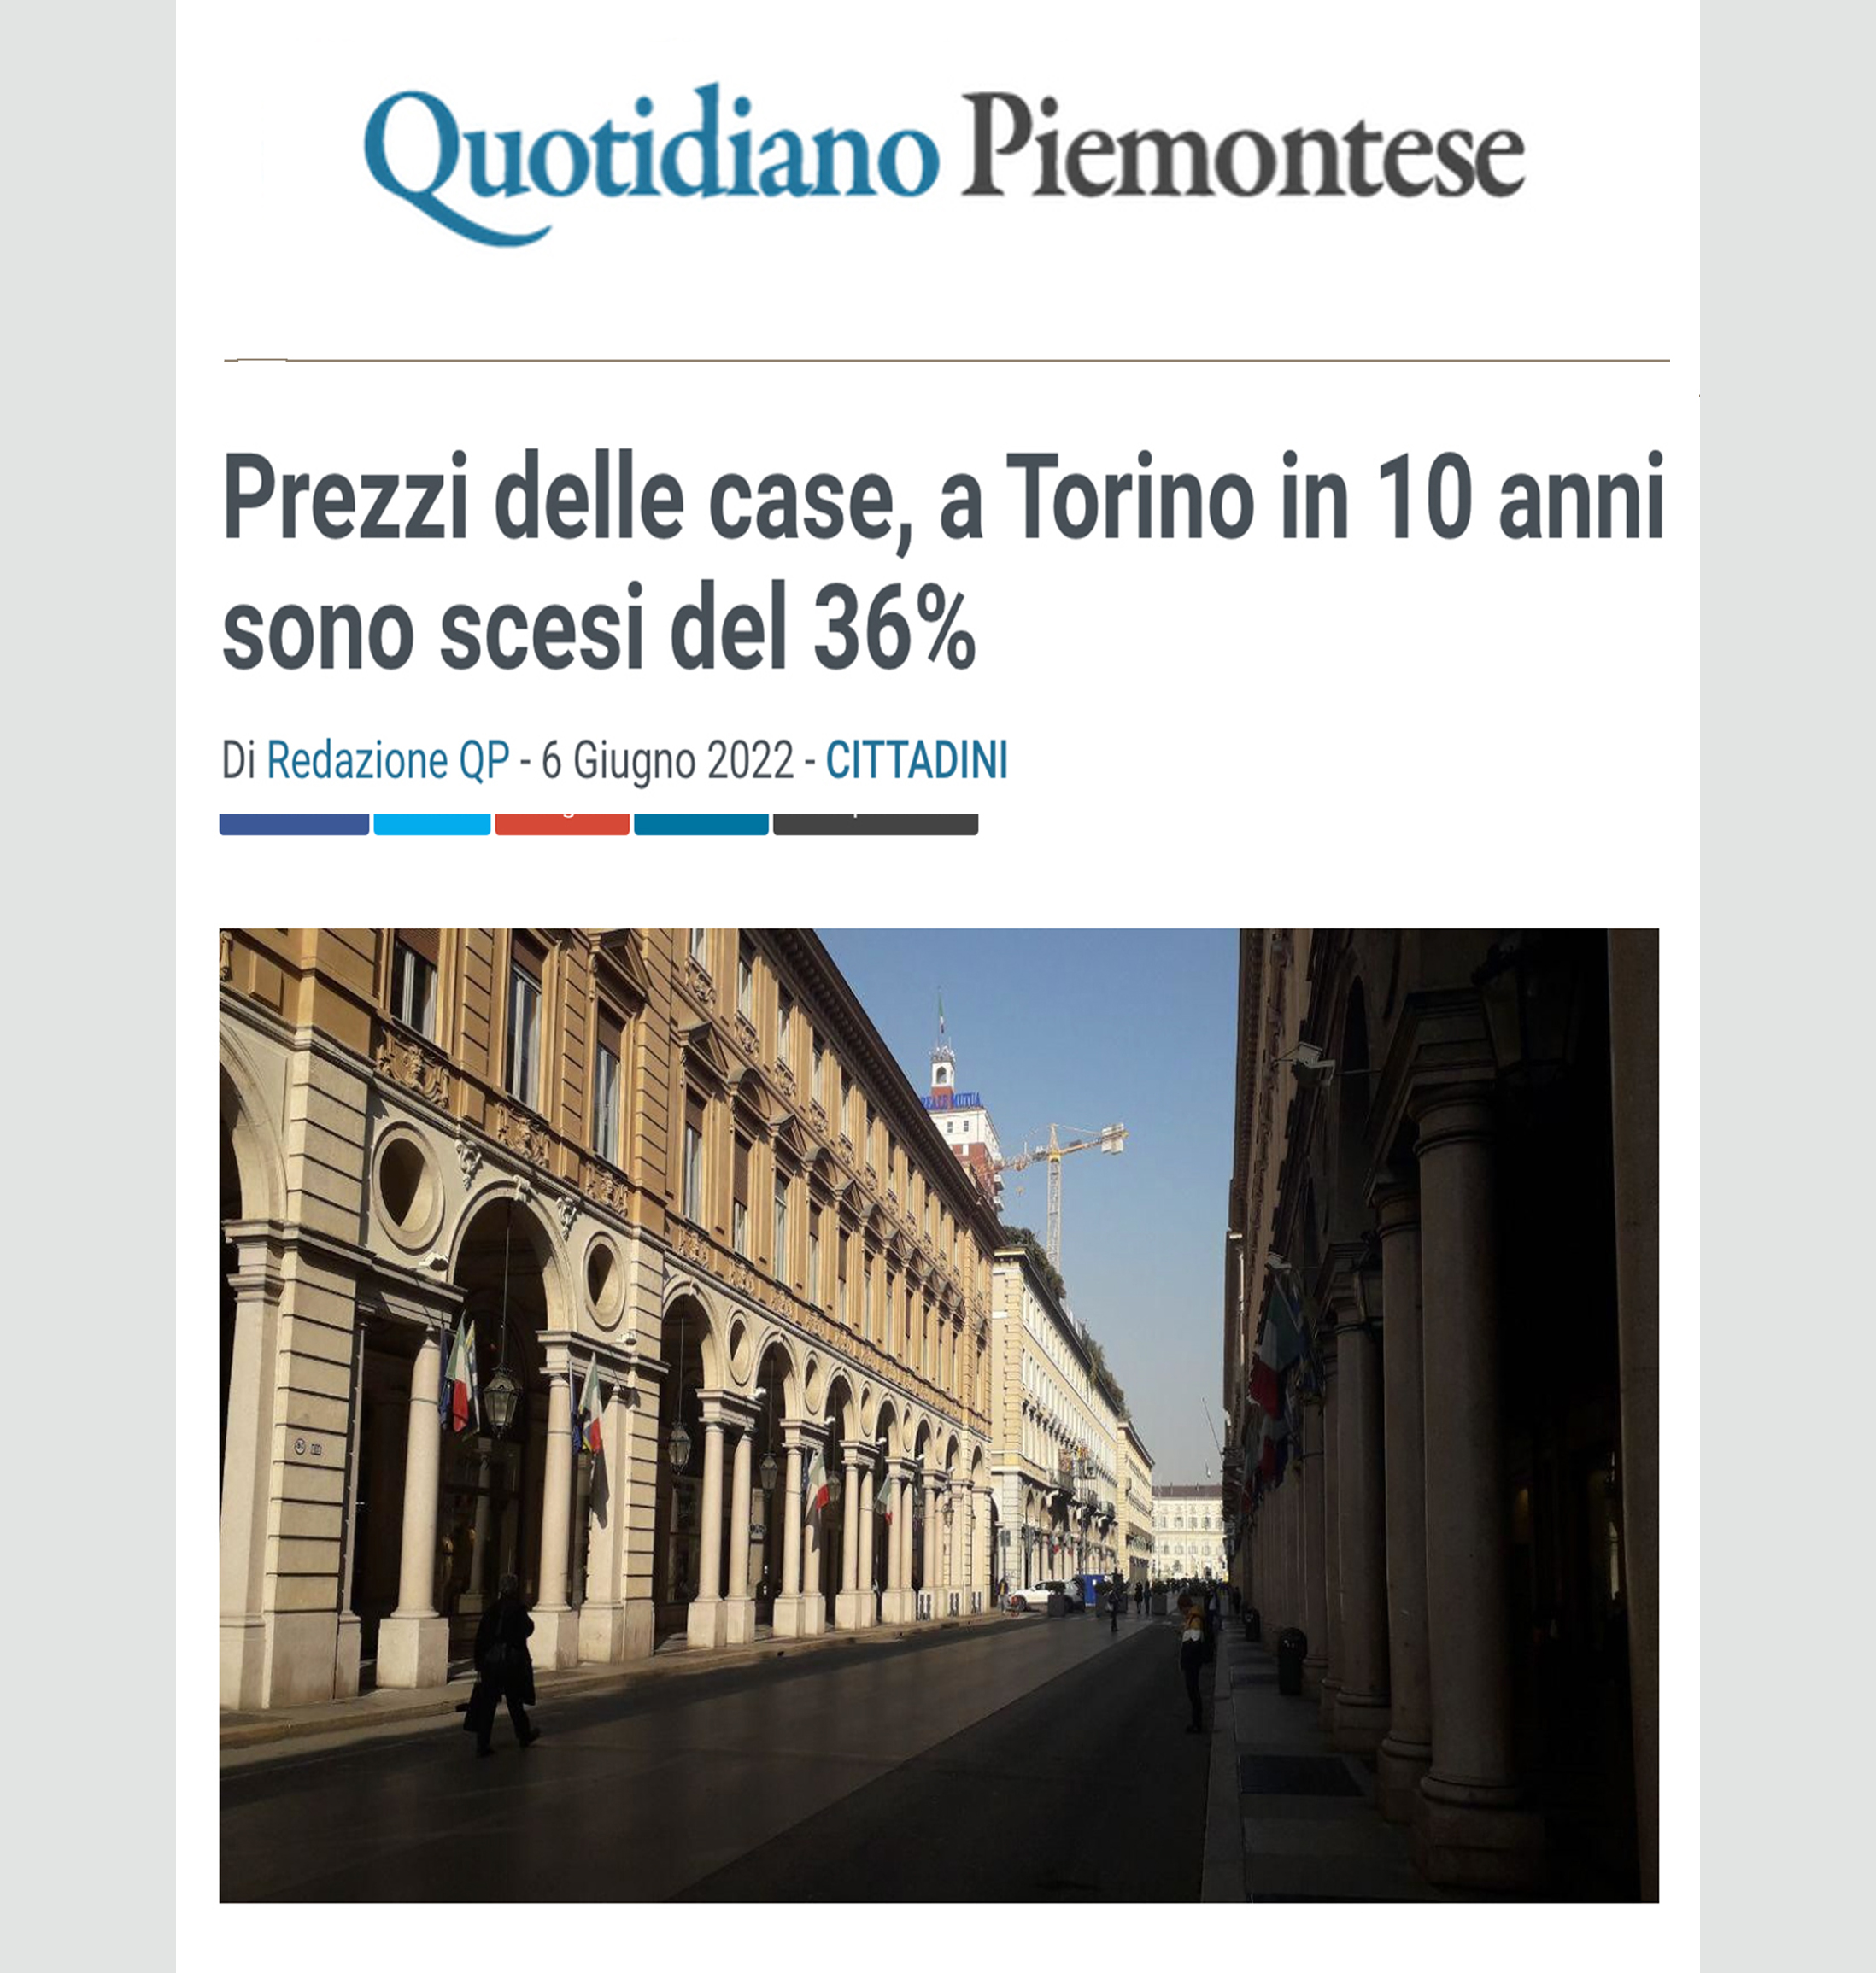 Immagine copertina news per Prezzi delle case, a Torino in 10 anni sono scesi del 36%.